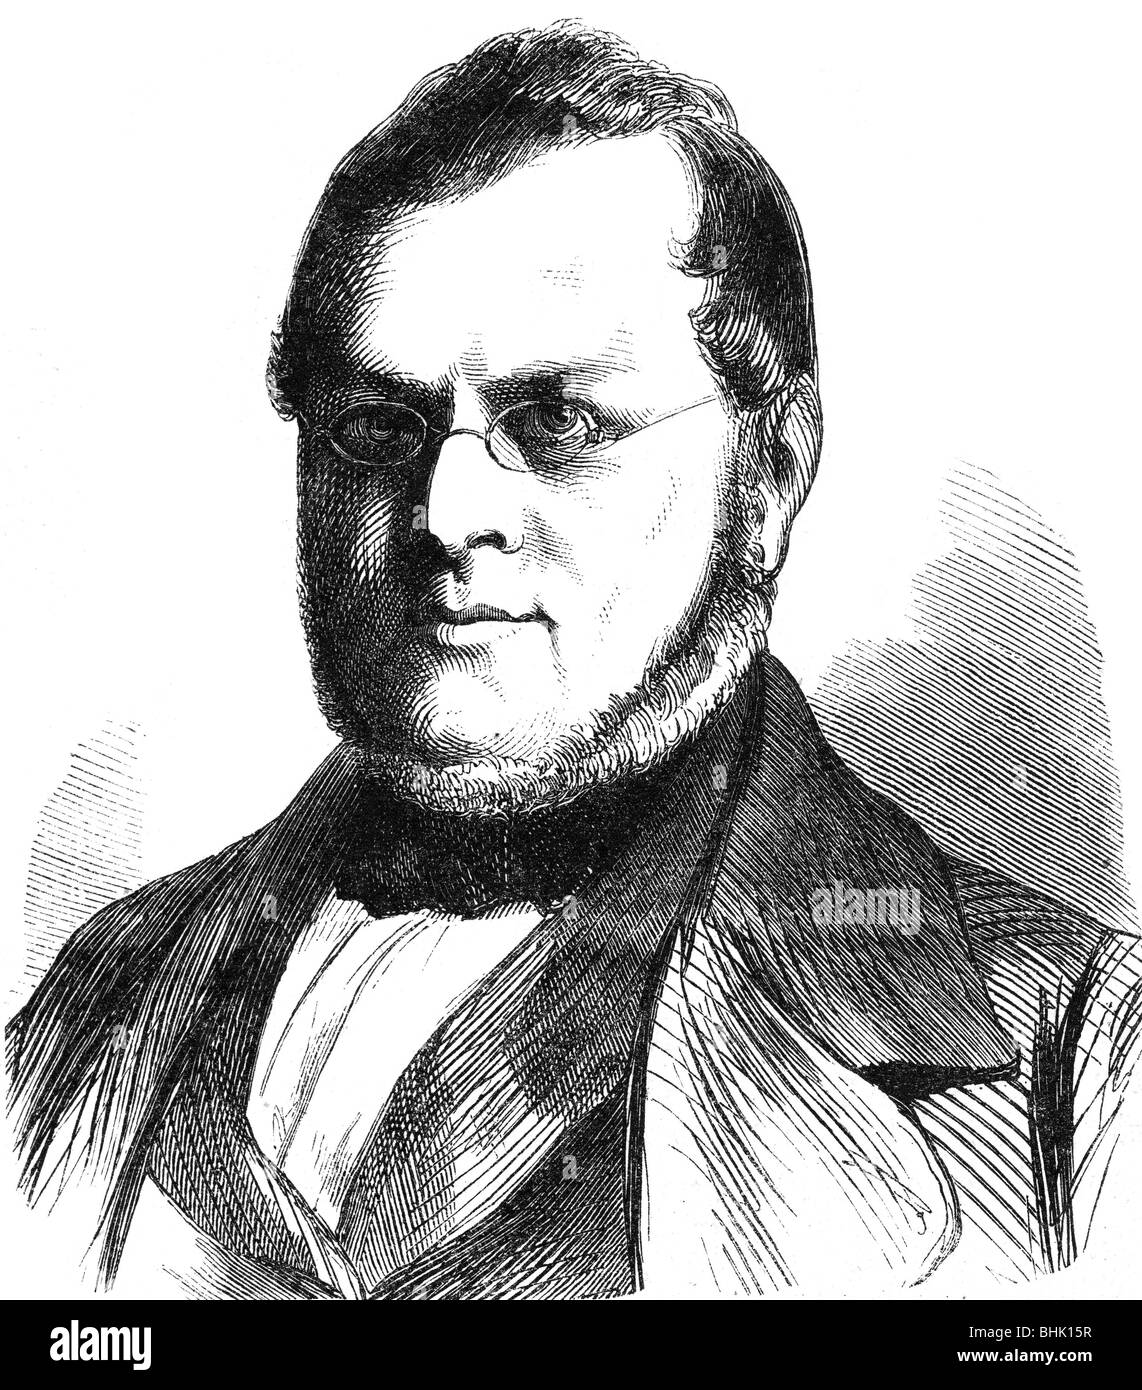 Cavour, Camillo Benso Conte di, 10.8.1810 - 6.6.1861, Italian politician, Prime Minister 17.3.1861 - 6.6.1861, portrait, wood engraving, 19th century, , Stock Photo